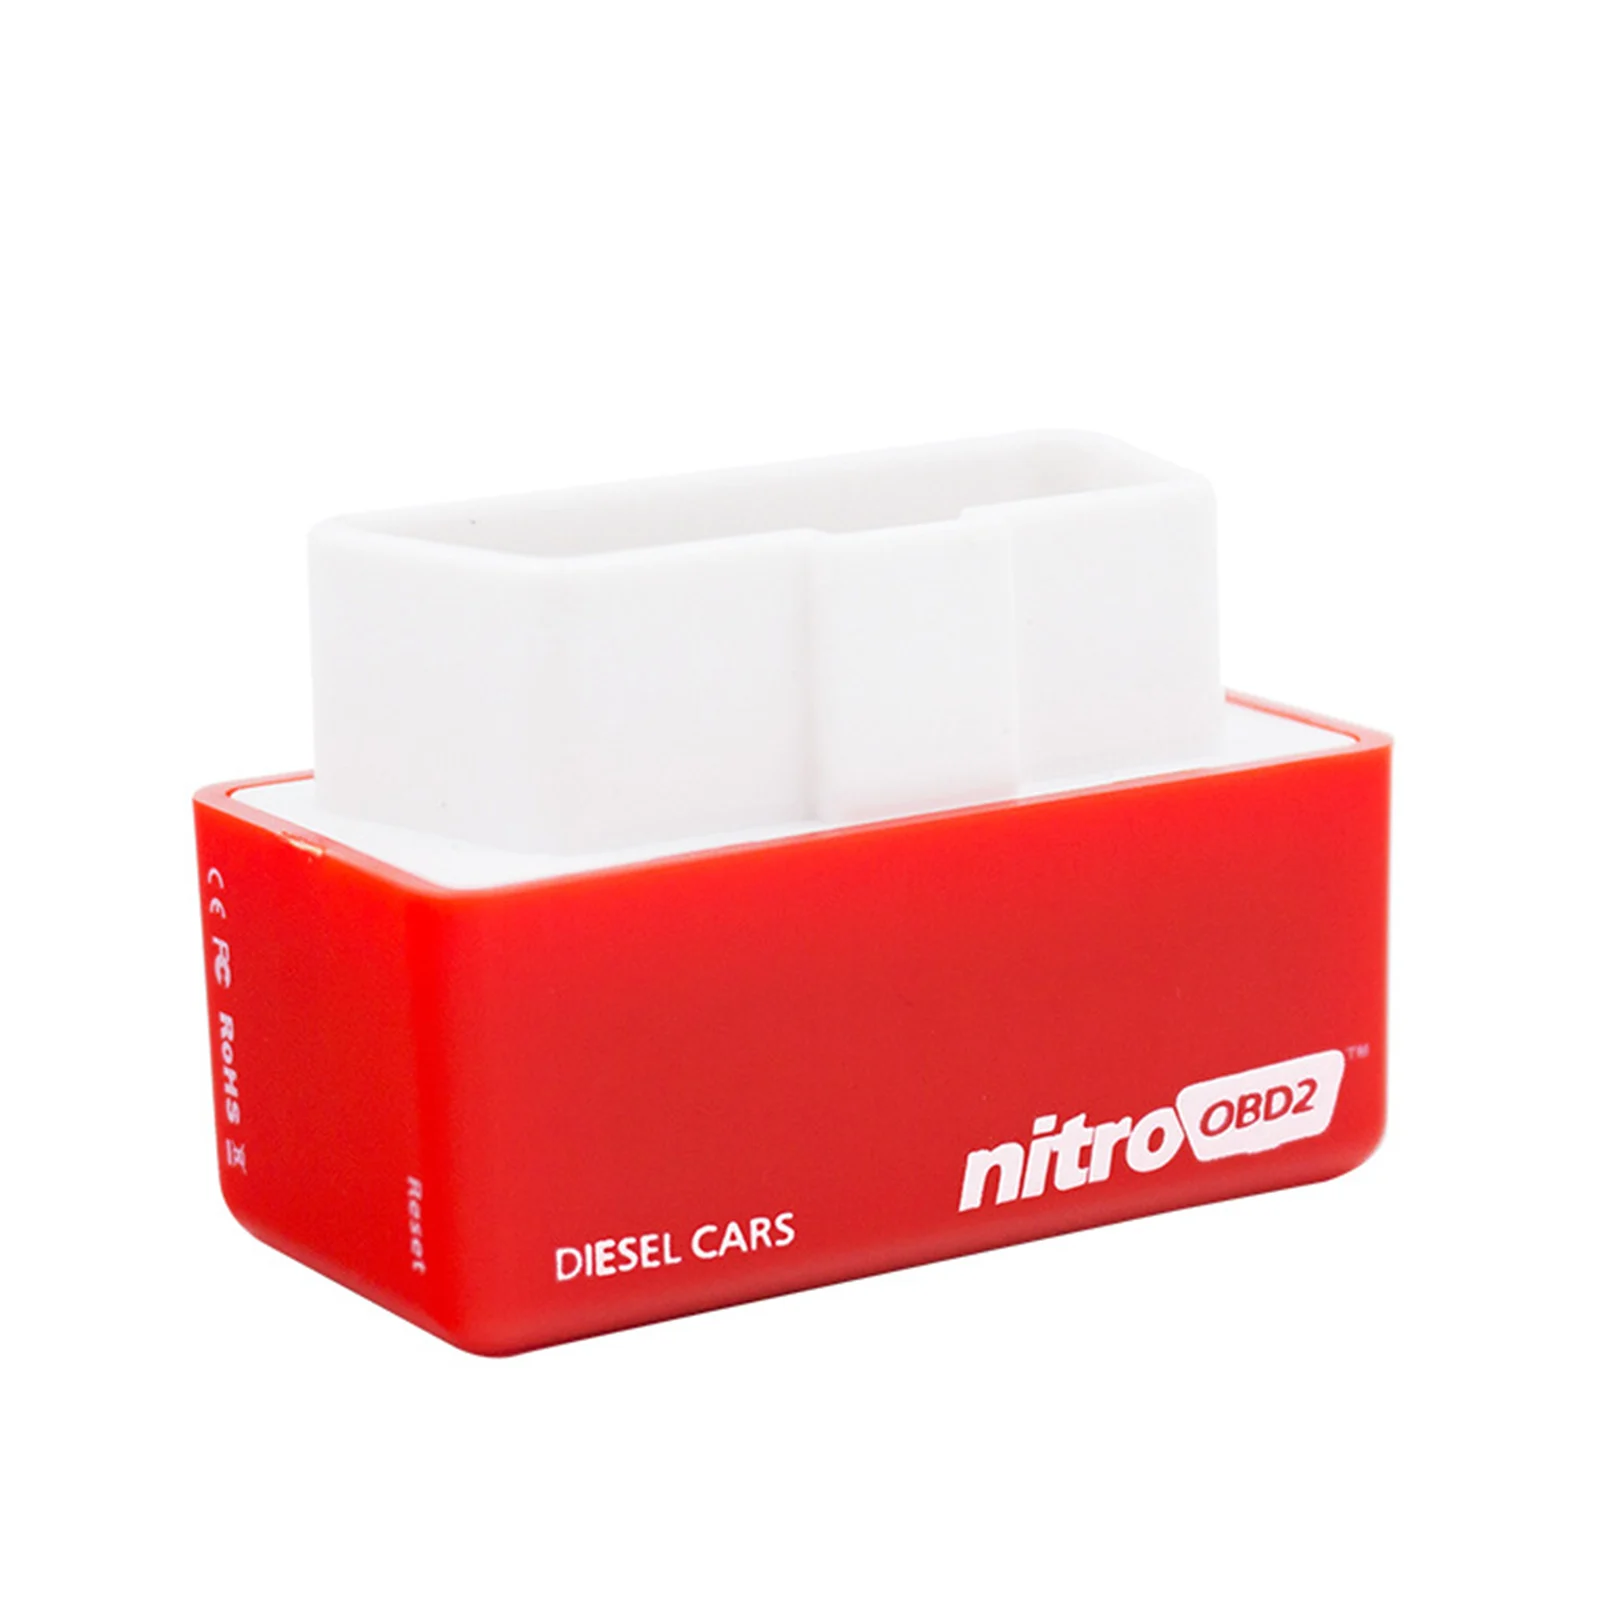 

Eco Fuels Saver OBD2 Nitro OBD2 Fuels Saver Gasolines Eco OBD2 Economy Chip Tuning Box Code Readers & Scan Tools Car Diagnostic